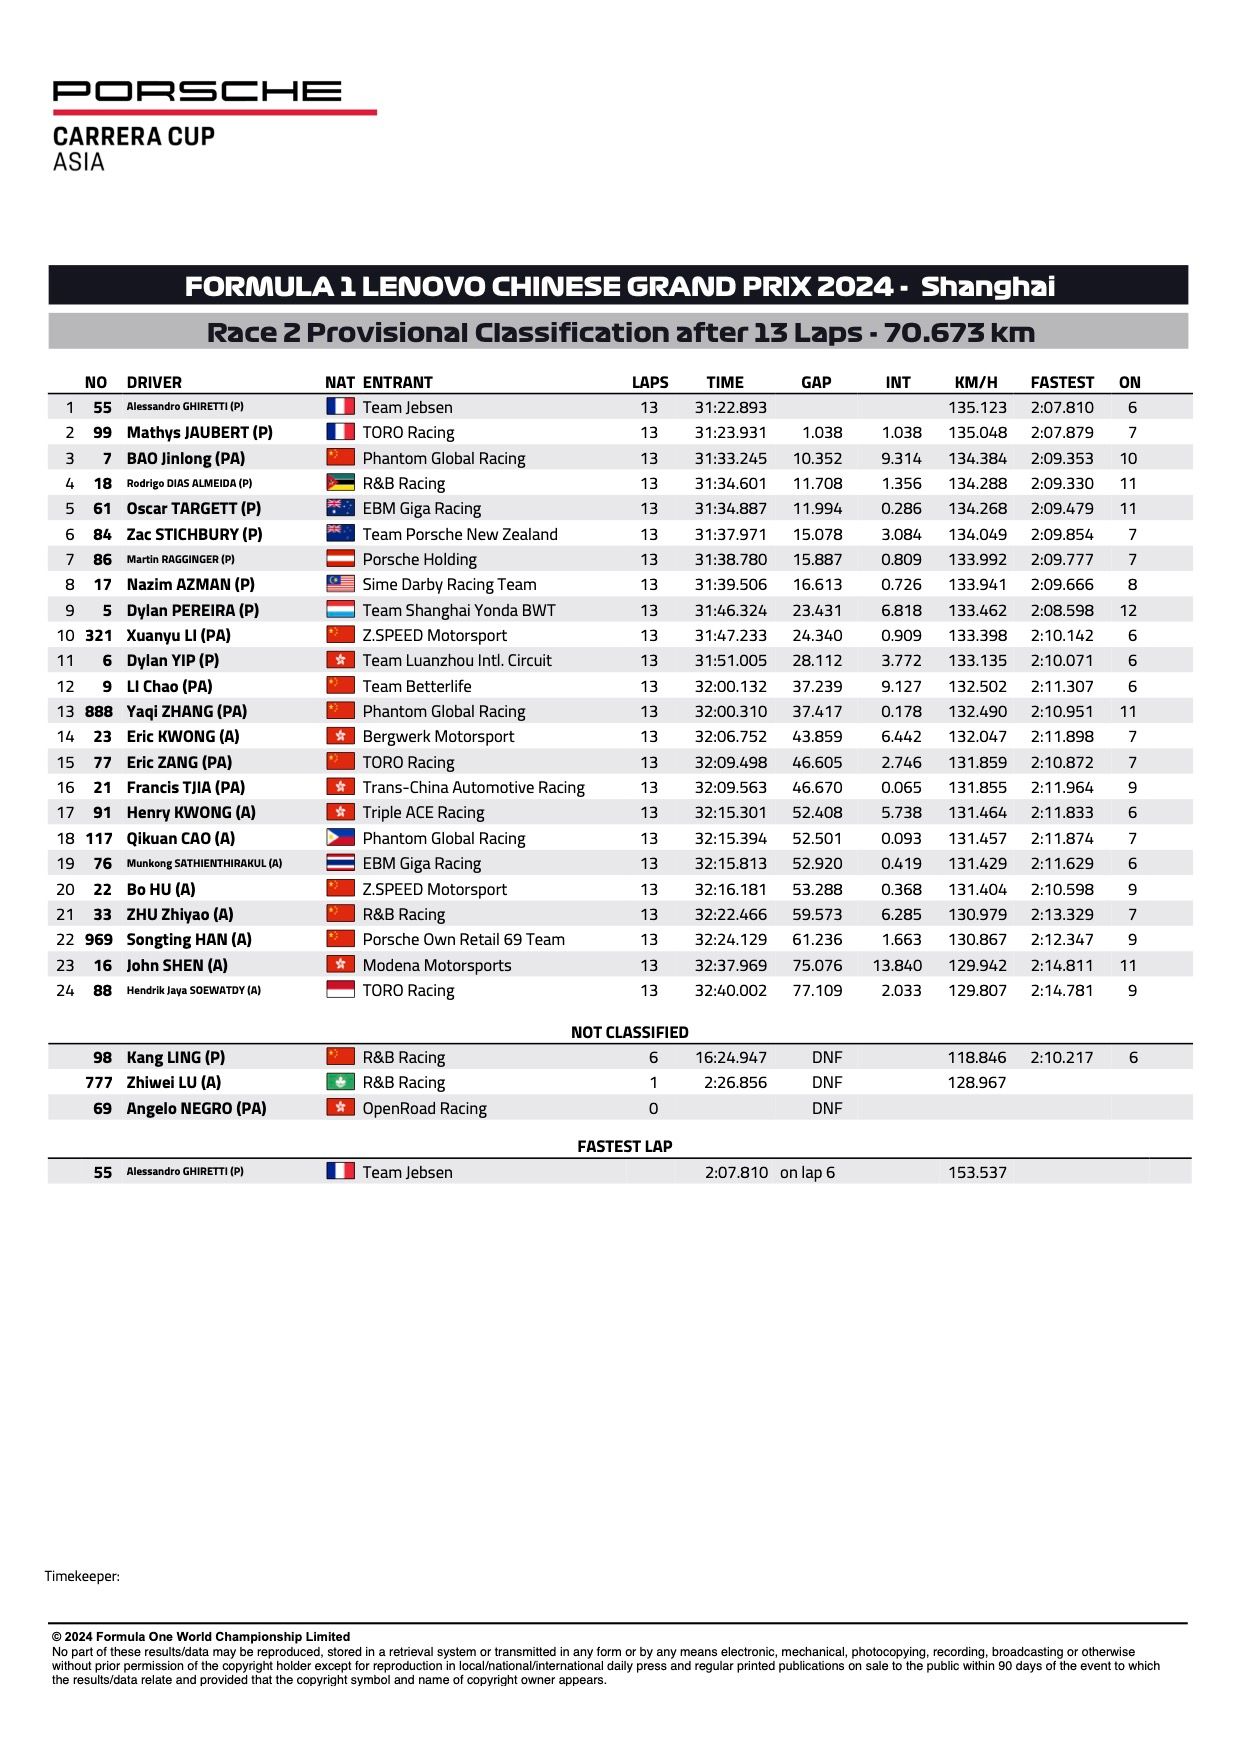 Resultados detallados de las rondas 1 y 2 de la carrera 2 de la Porsche Carrera Cup Asia 2024 Shanghai